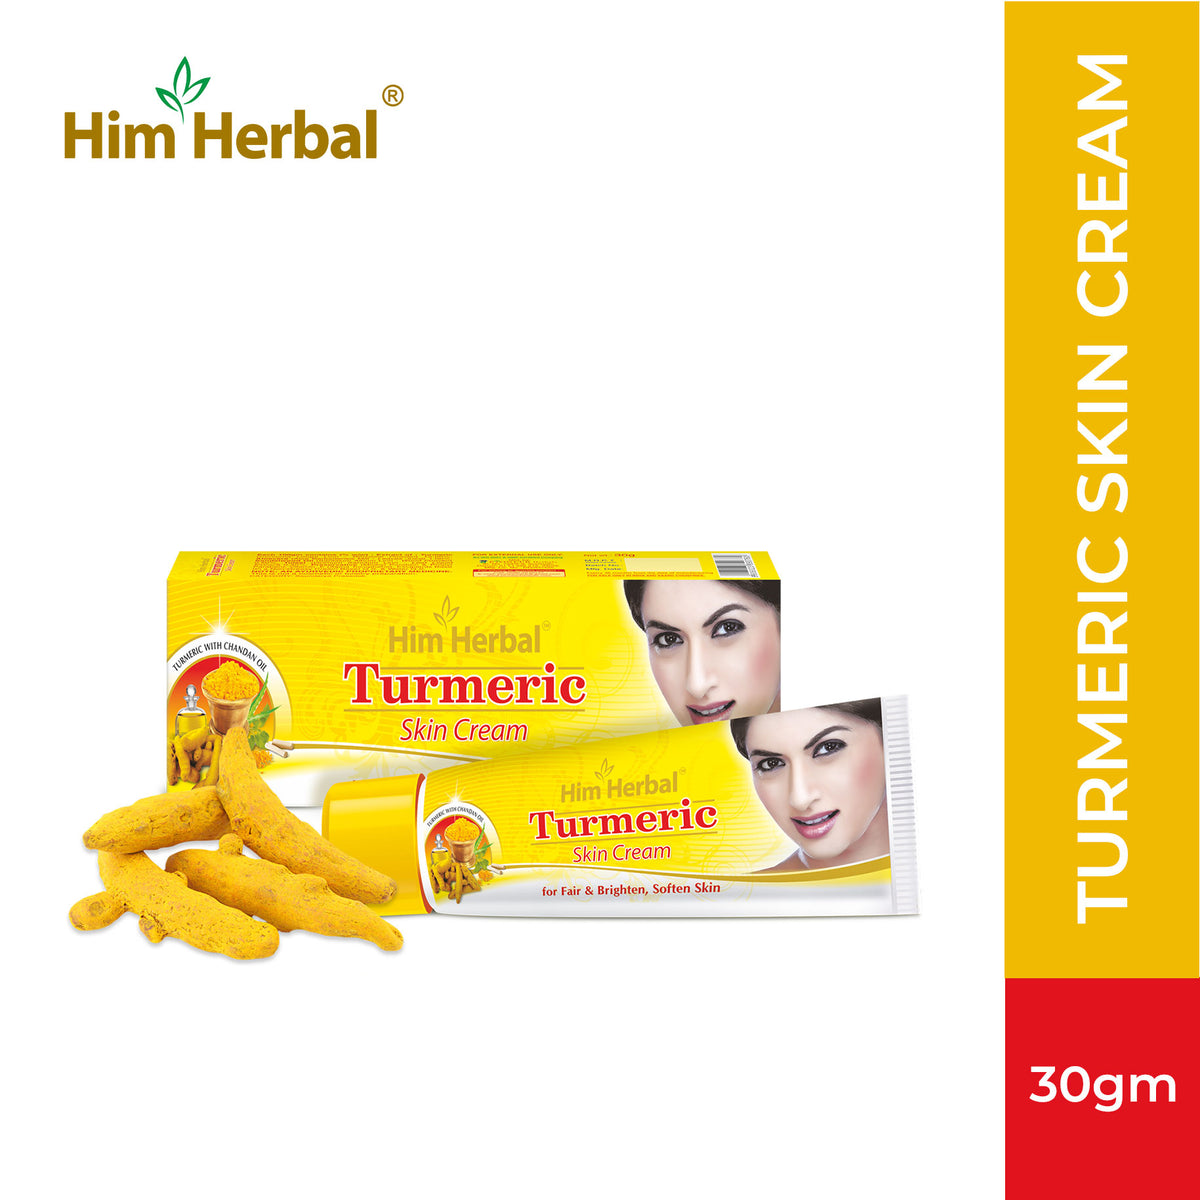 Him Herbal Turmeric (Skin Cream)